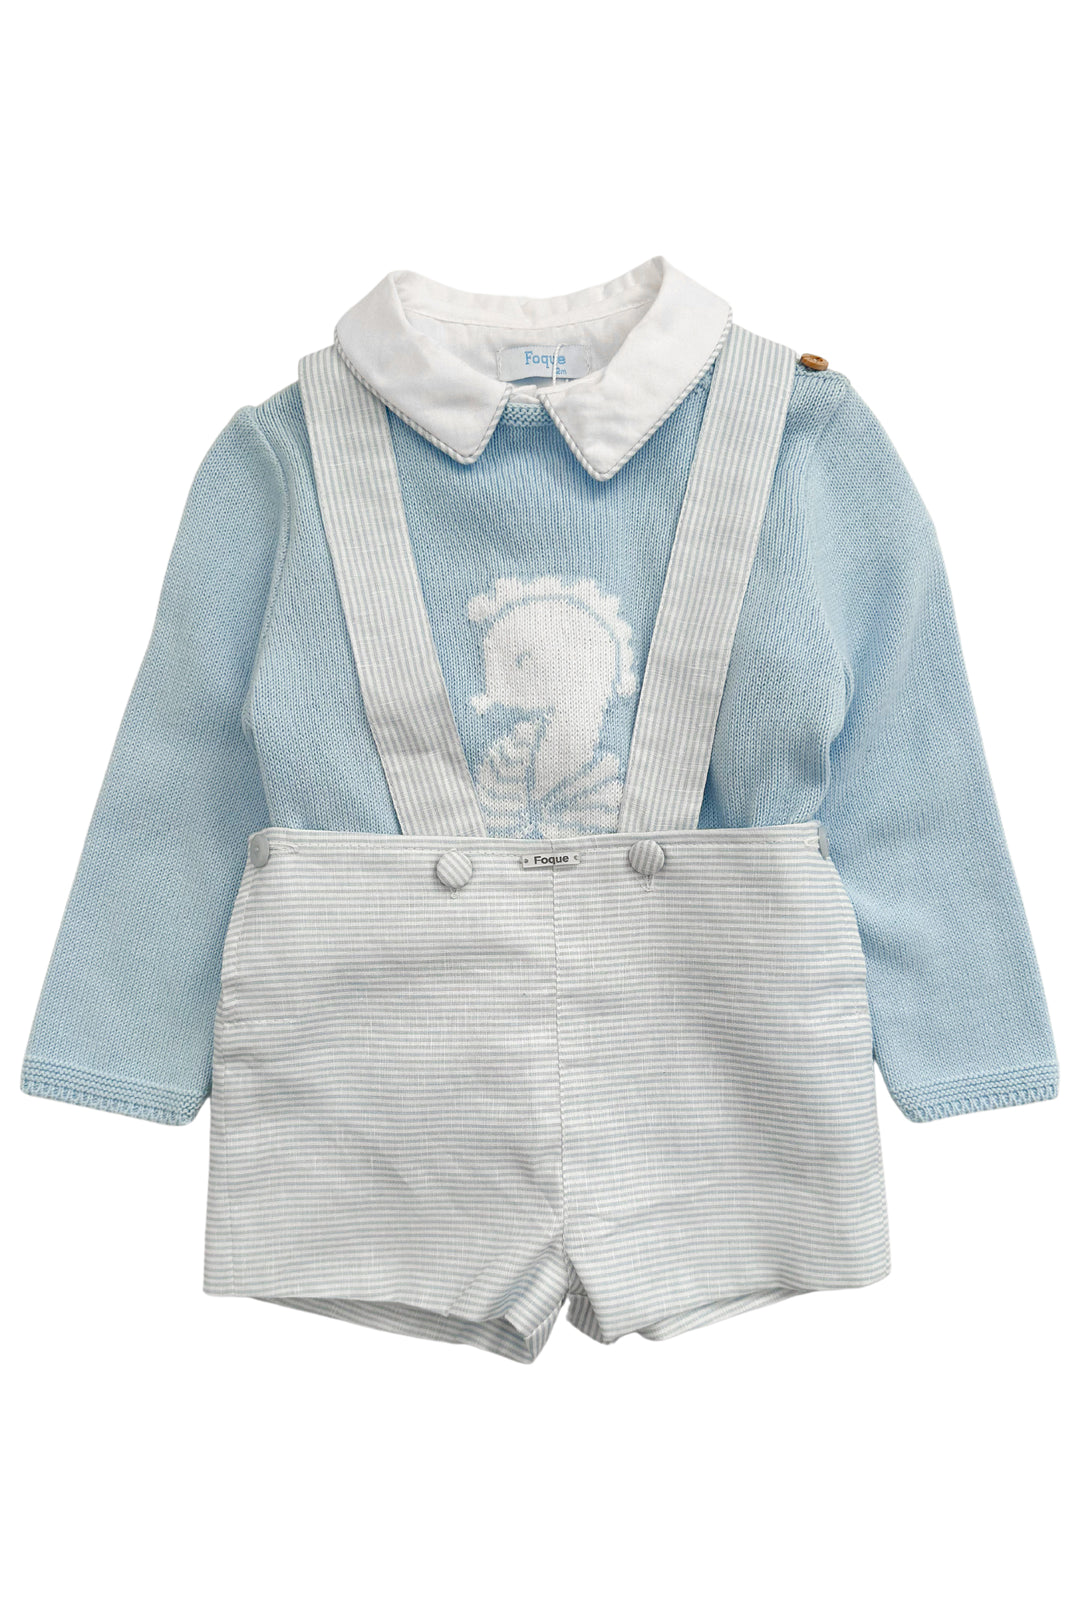 Foque "Beau" Blue Knit Seahorse Jumper, Shirt & Shorts | Millie and John